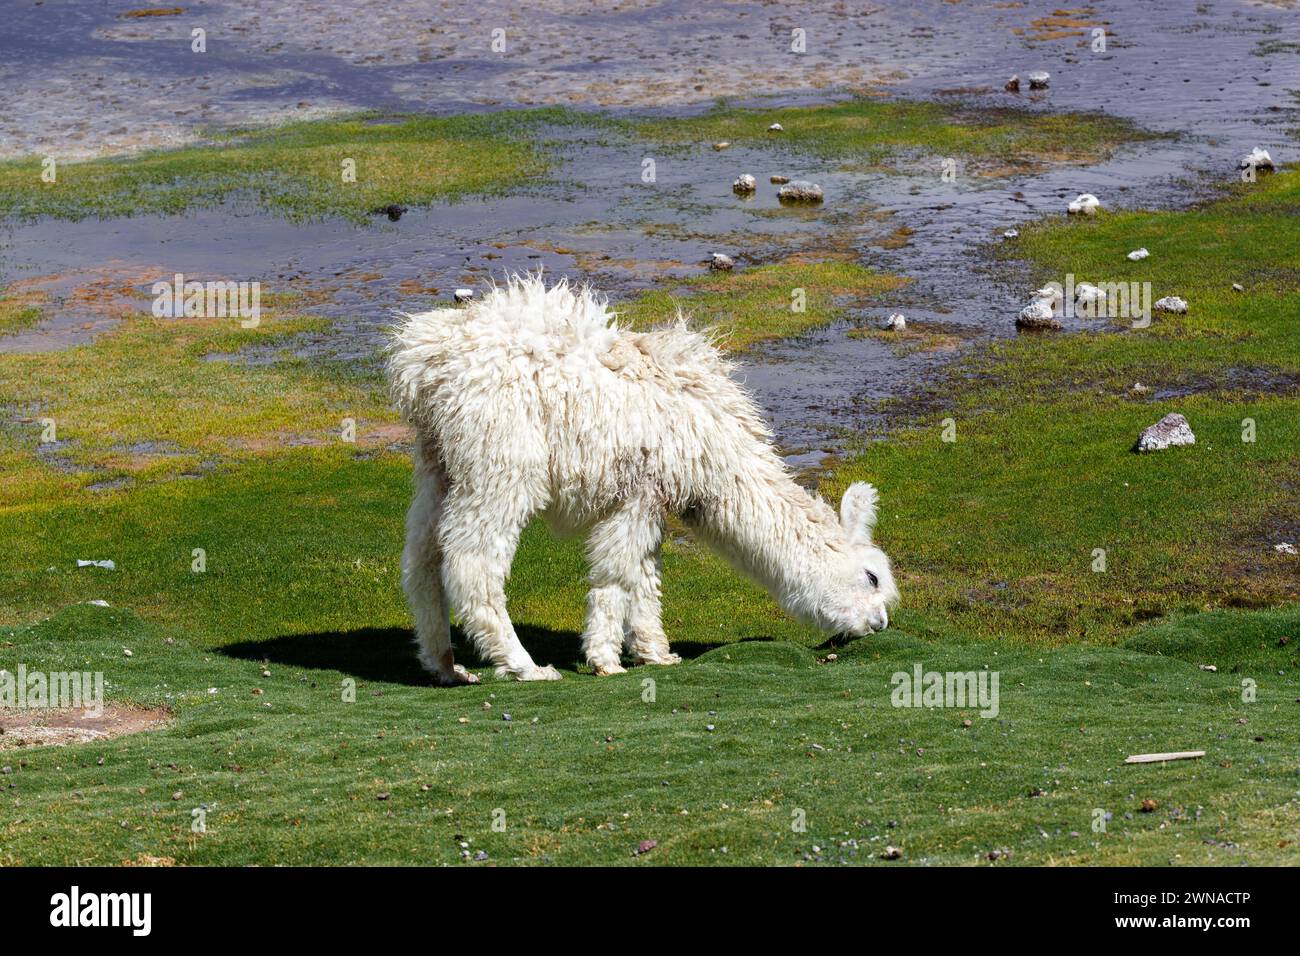 Lama bianca che mangia erba su un campo verde con pozzanghere d'acqua tipico paesaggio boliviano. Foto Stock